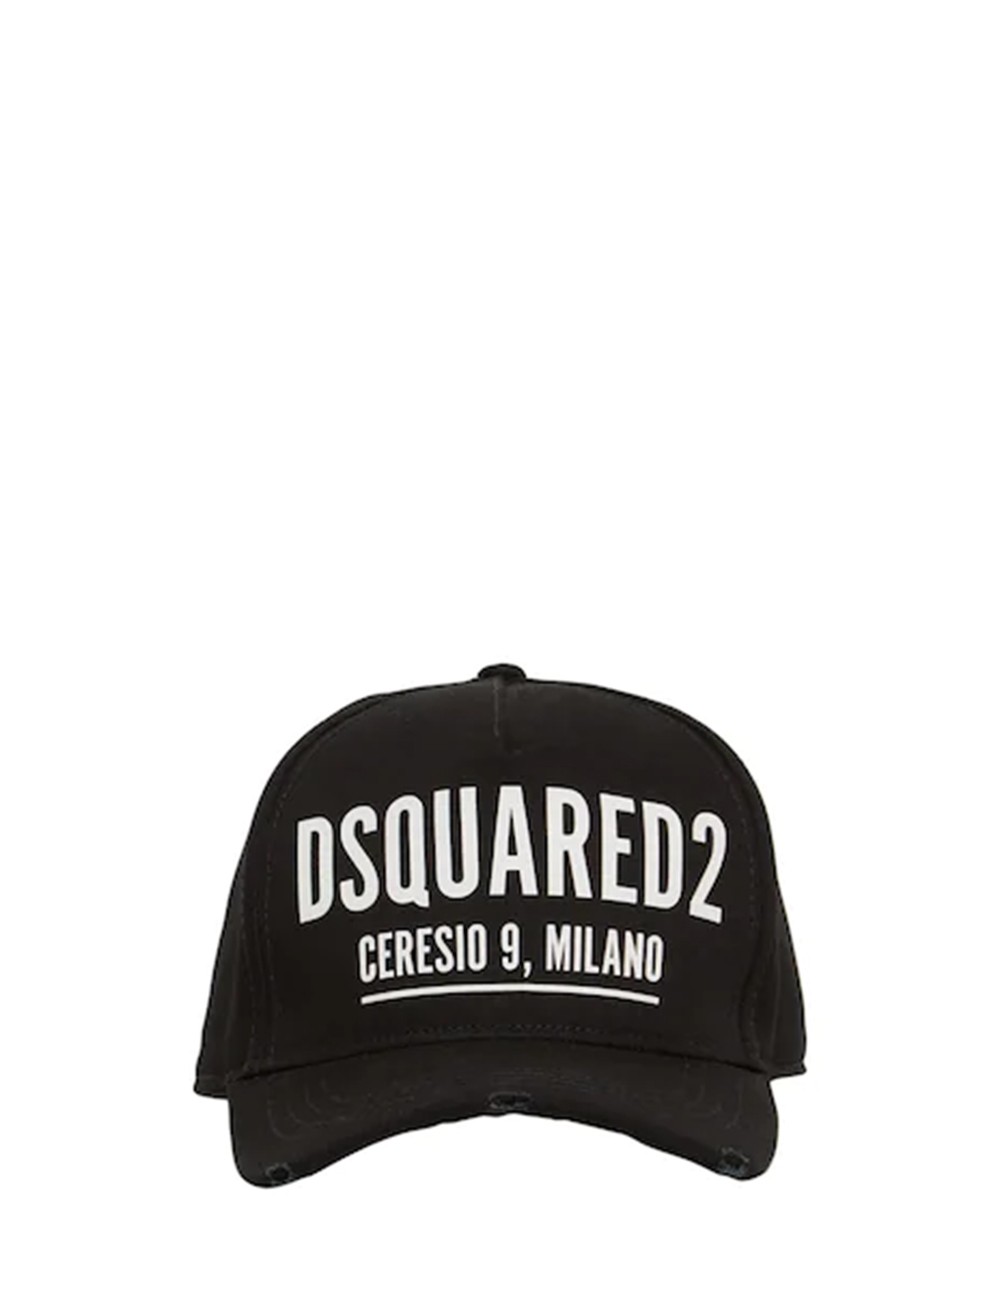 Cappello da Baseball "Dsquared2 Cartesio Milano" Nero